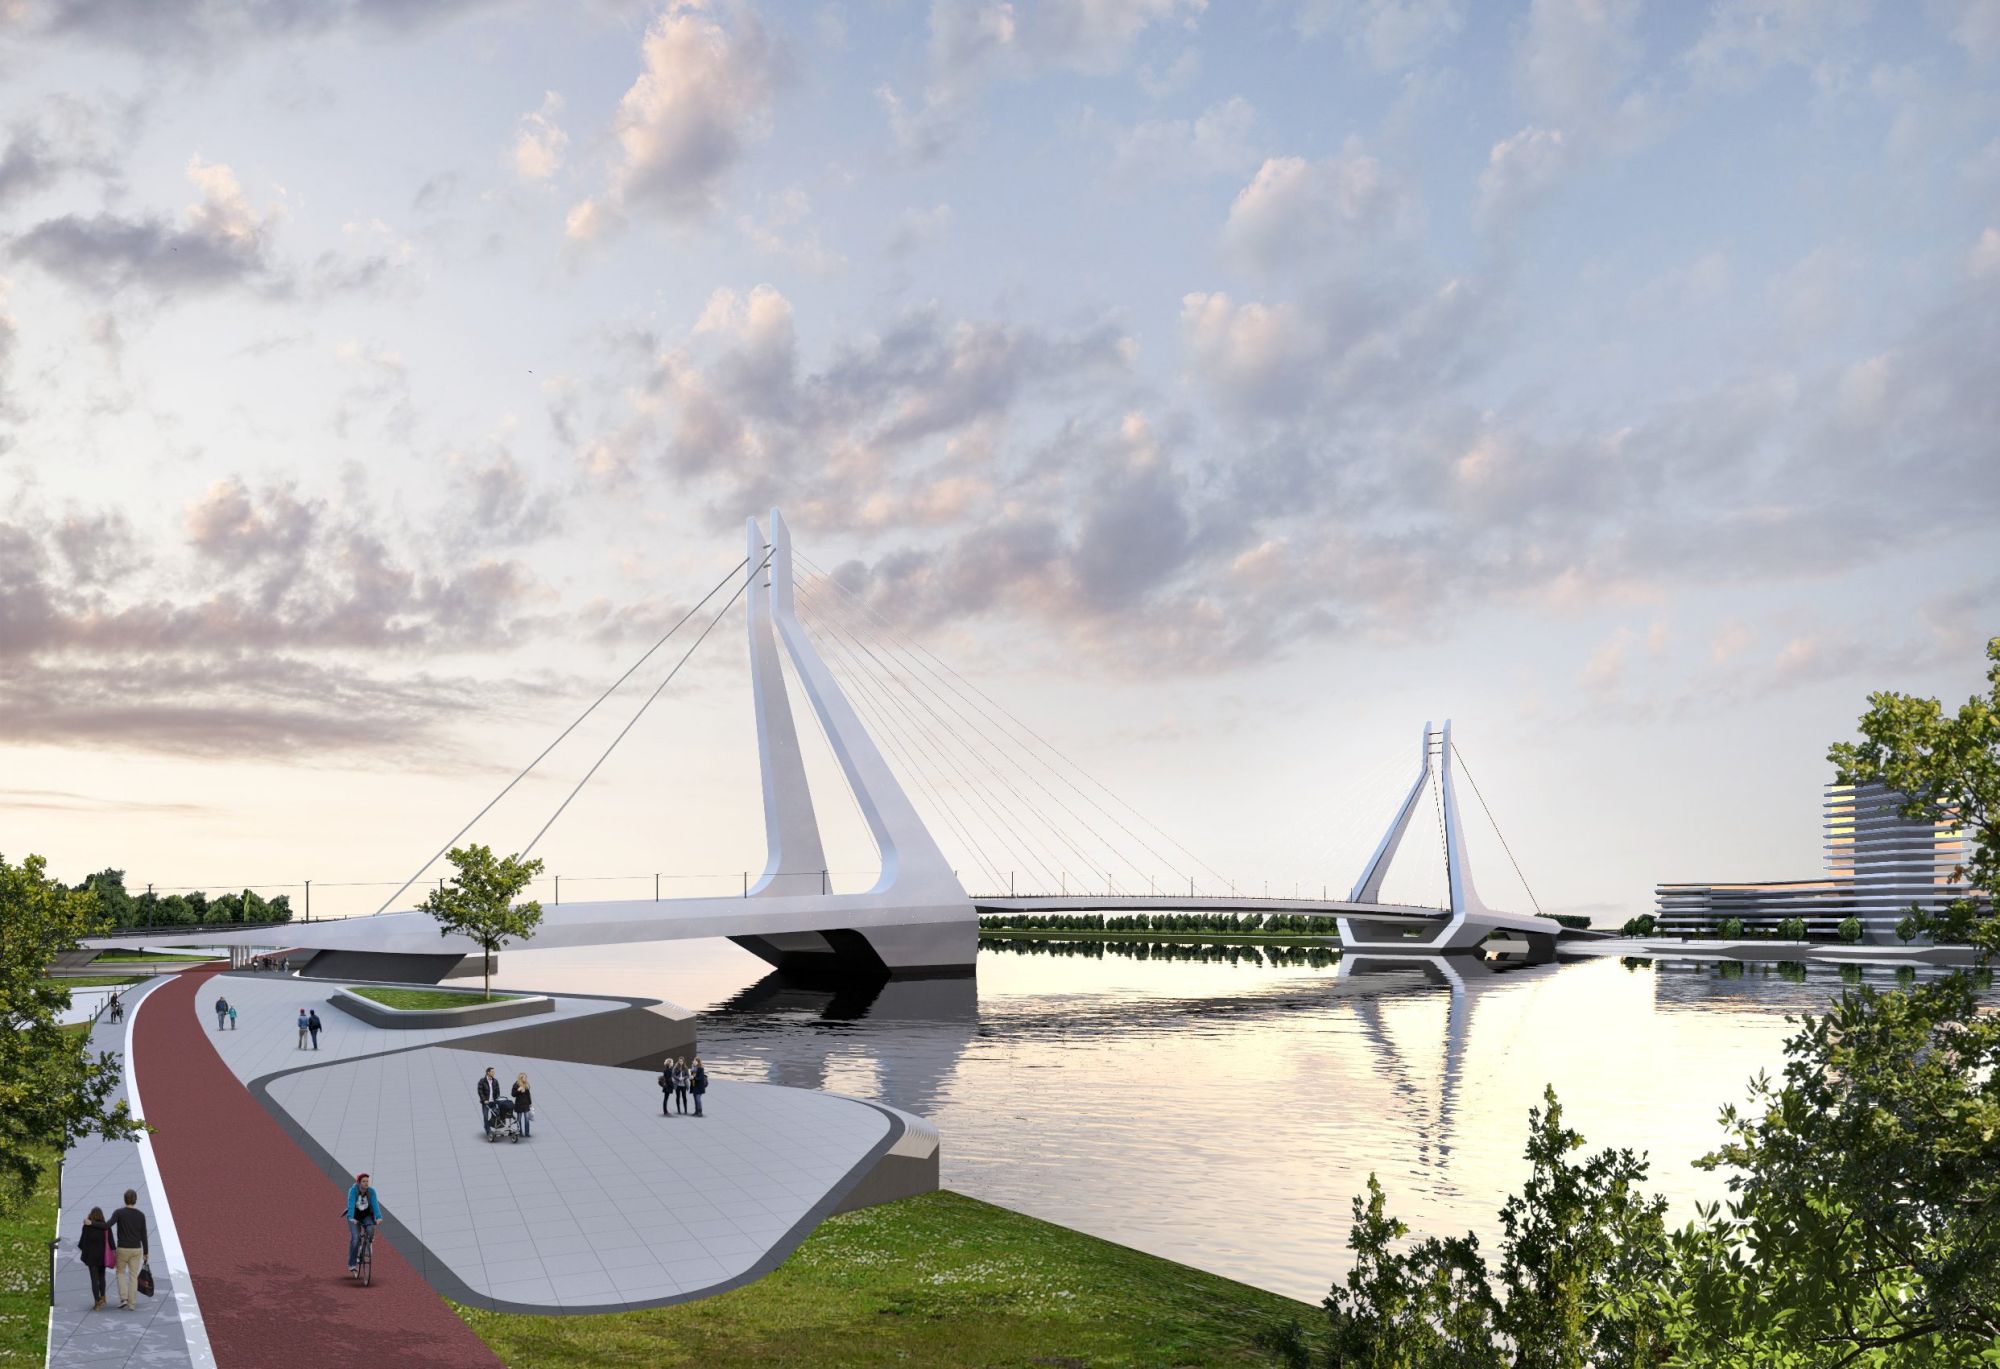 4,1 milliárdért tervezteti meg a kormány az olimpiára álmodott fővárosi Duna-hídat